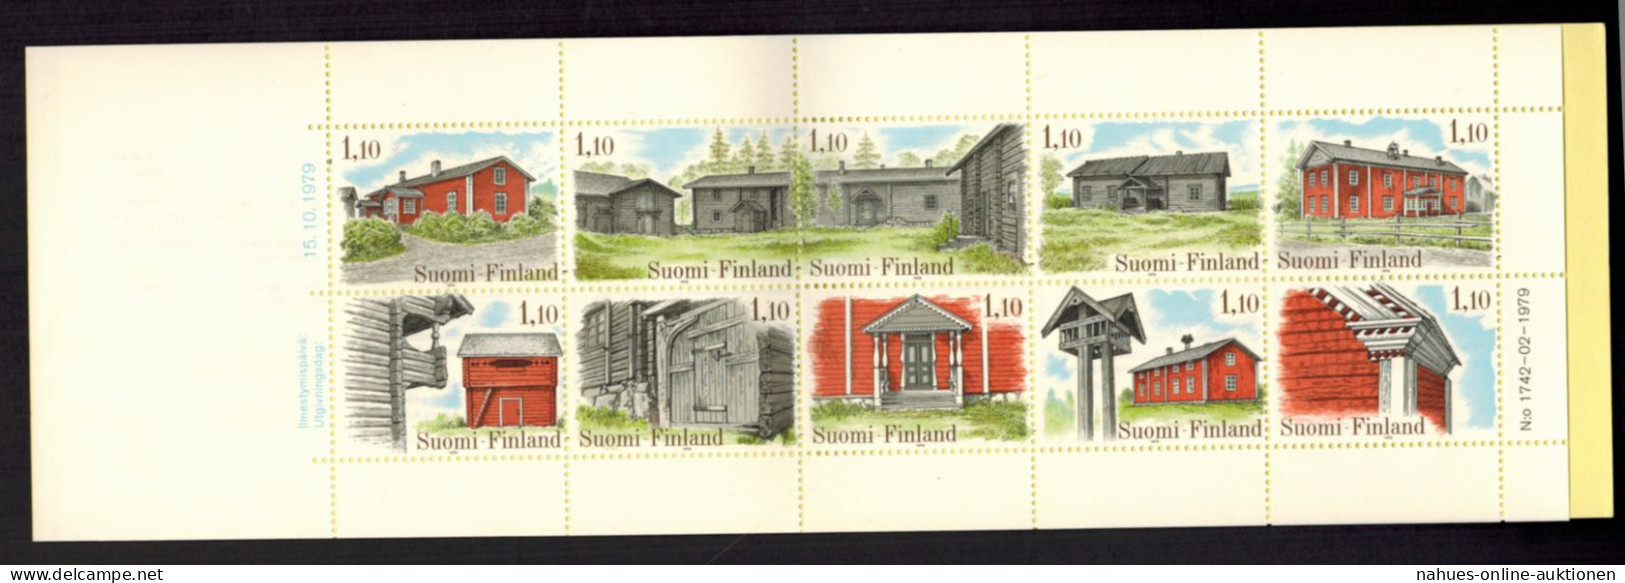 Finnland Markenheftchen 11 Architektur Bauernhäuser 1979 Tadellos Postfrisch - Ålandinseln